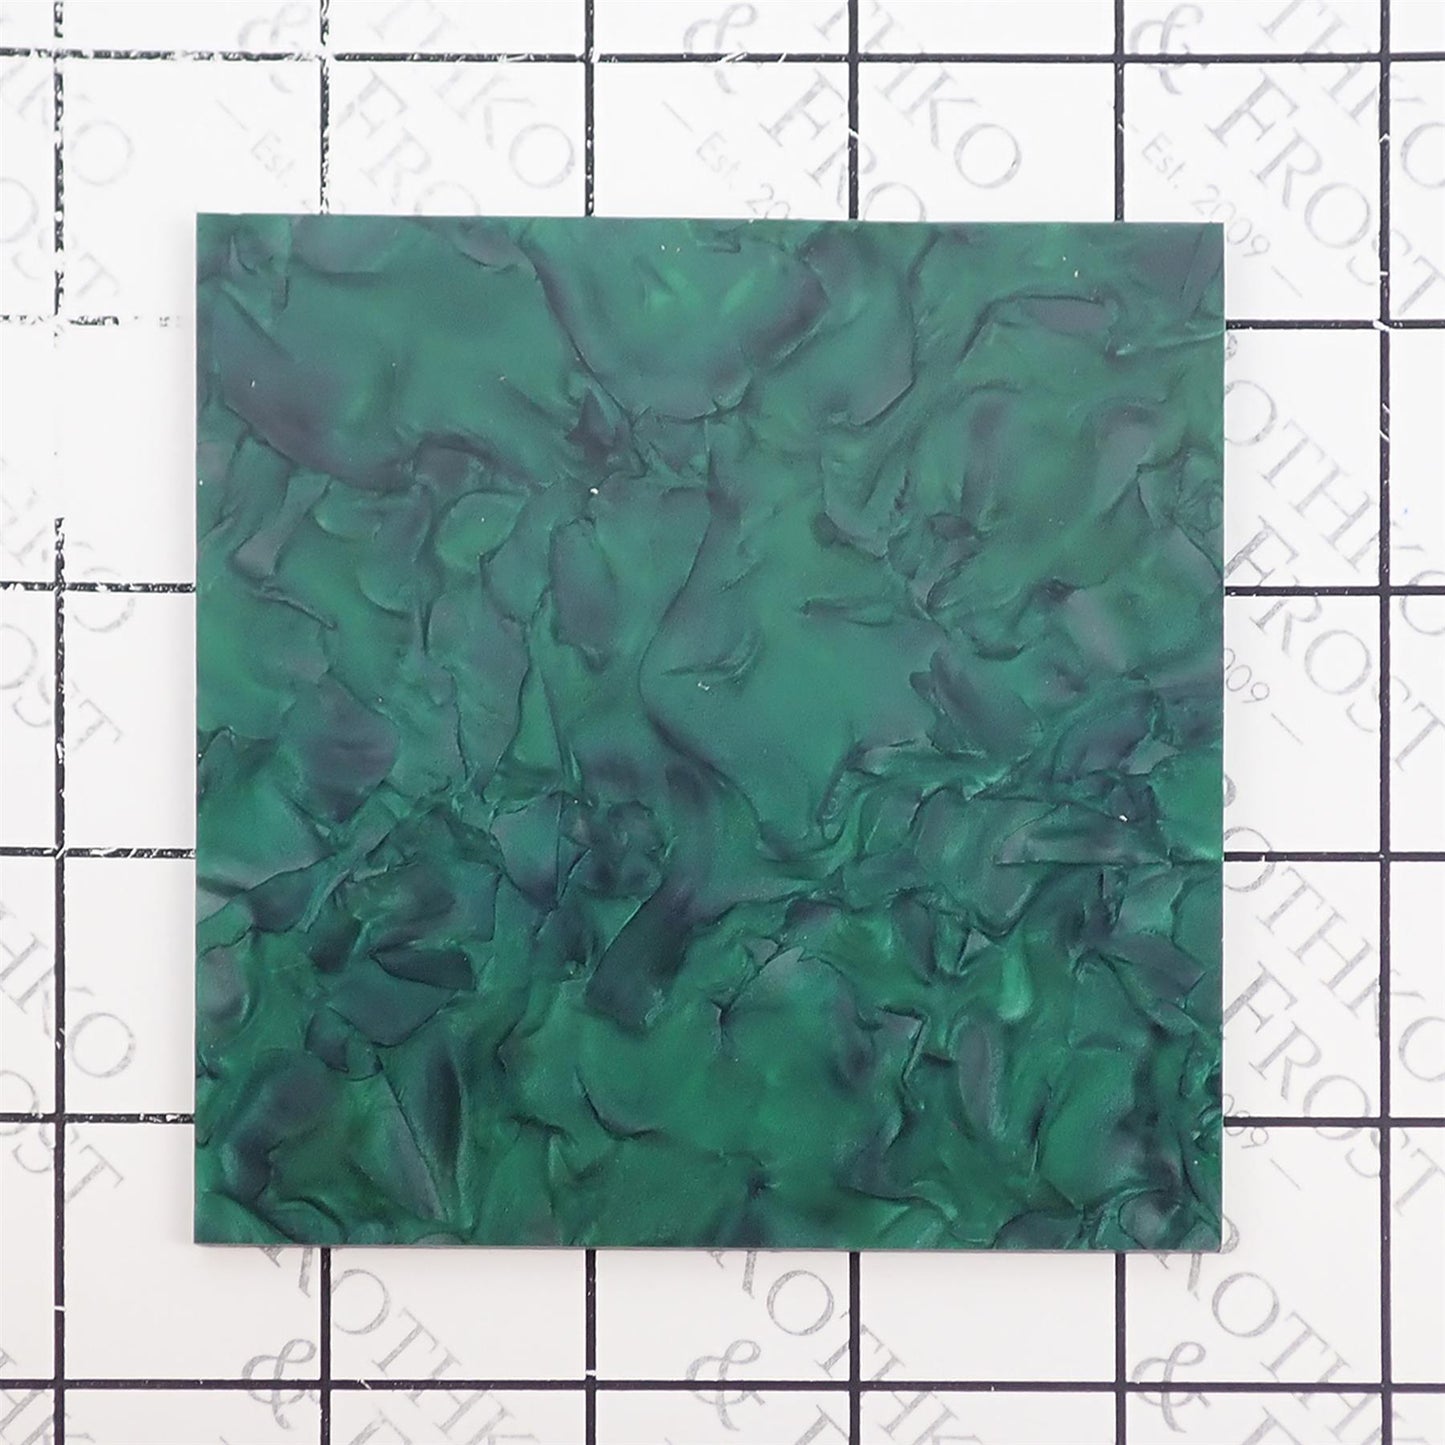 Incudo Emerald Green Pearloid Acrylic Sheet - 300x200x3mm (11.8x7.87x0.12")